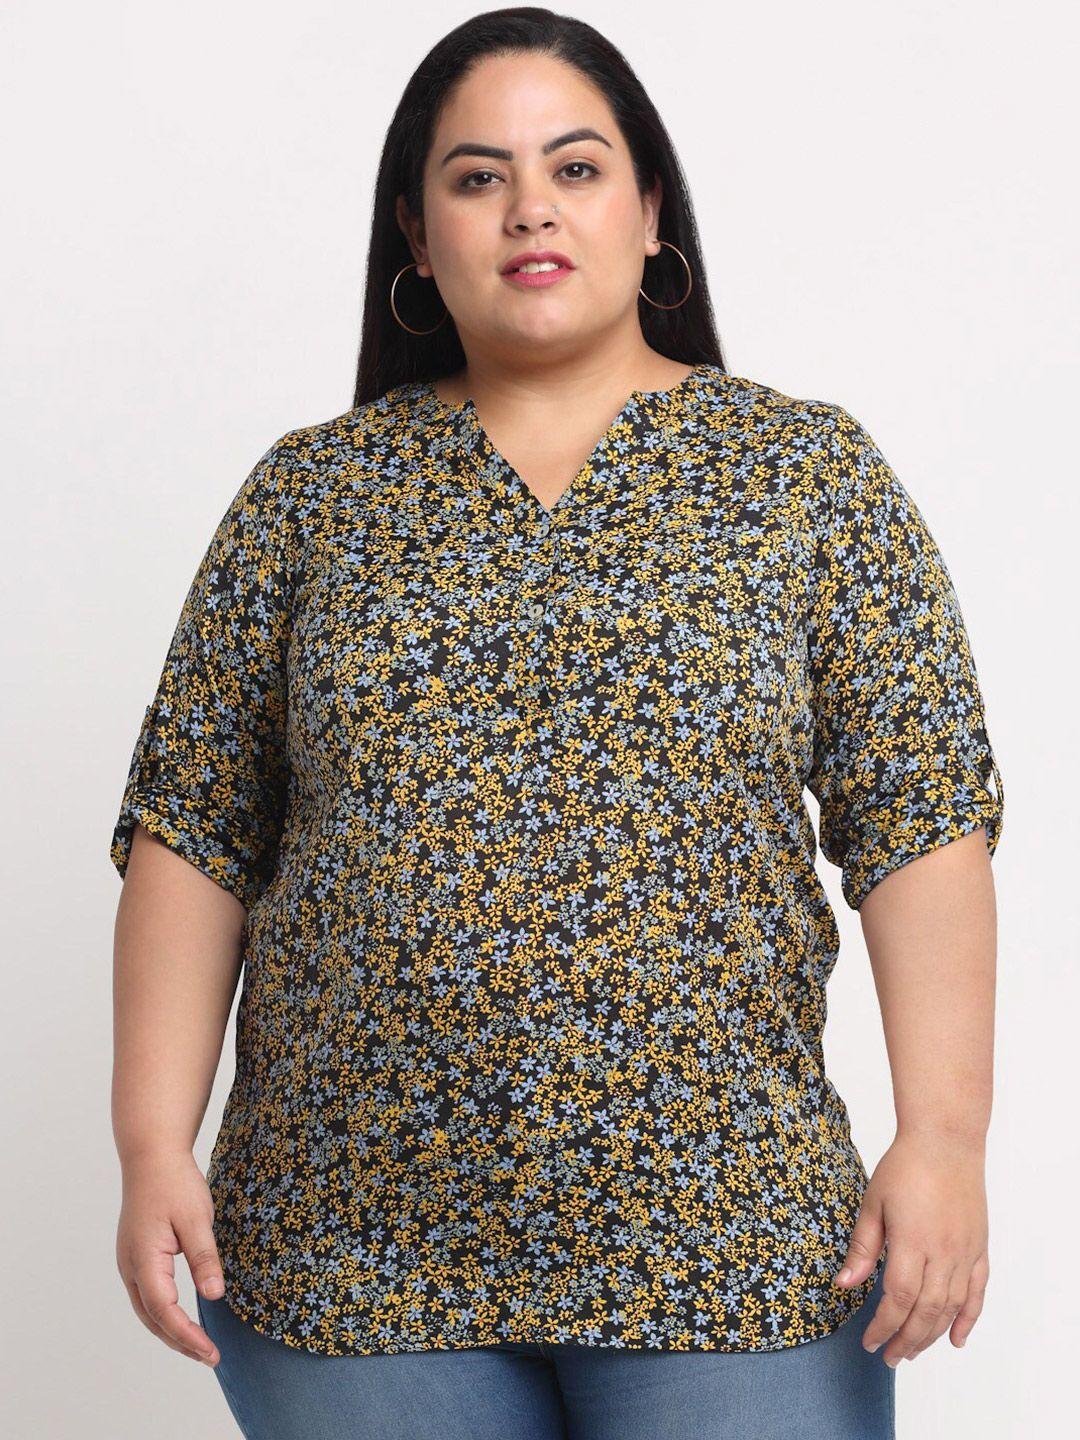 pluss black & yellow plus women floral print shirt style top